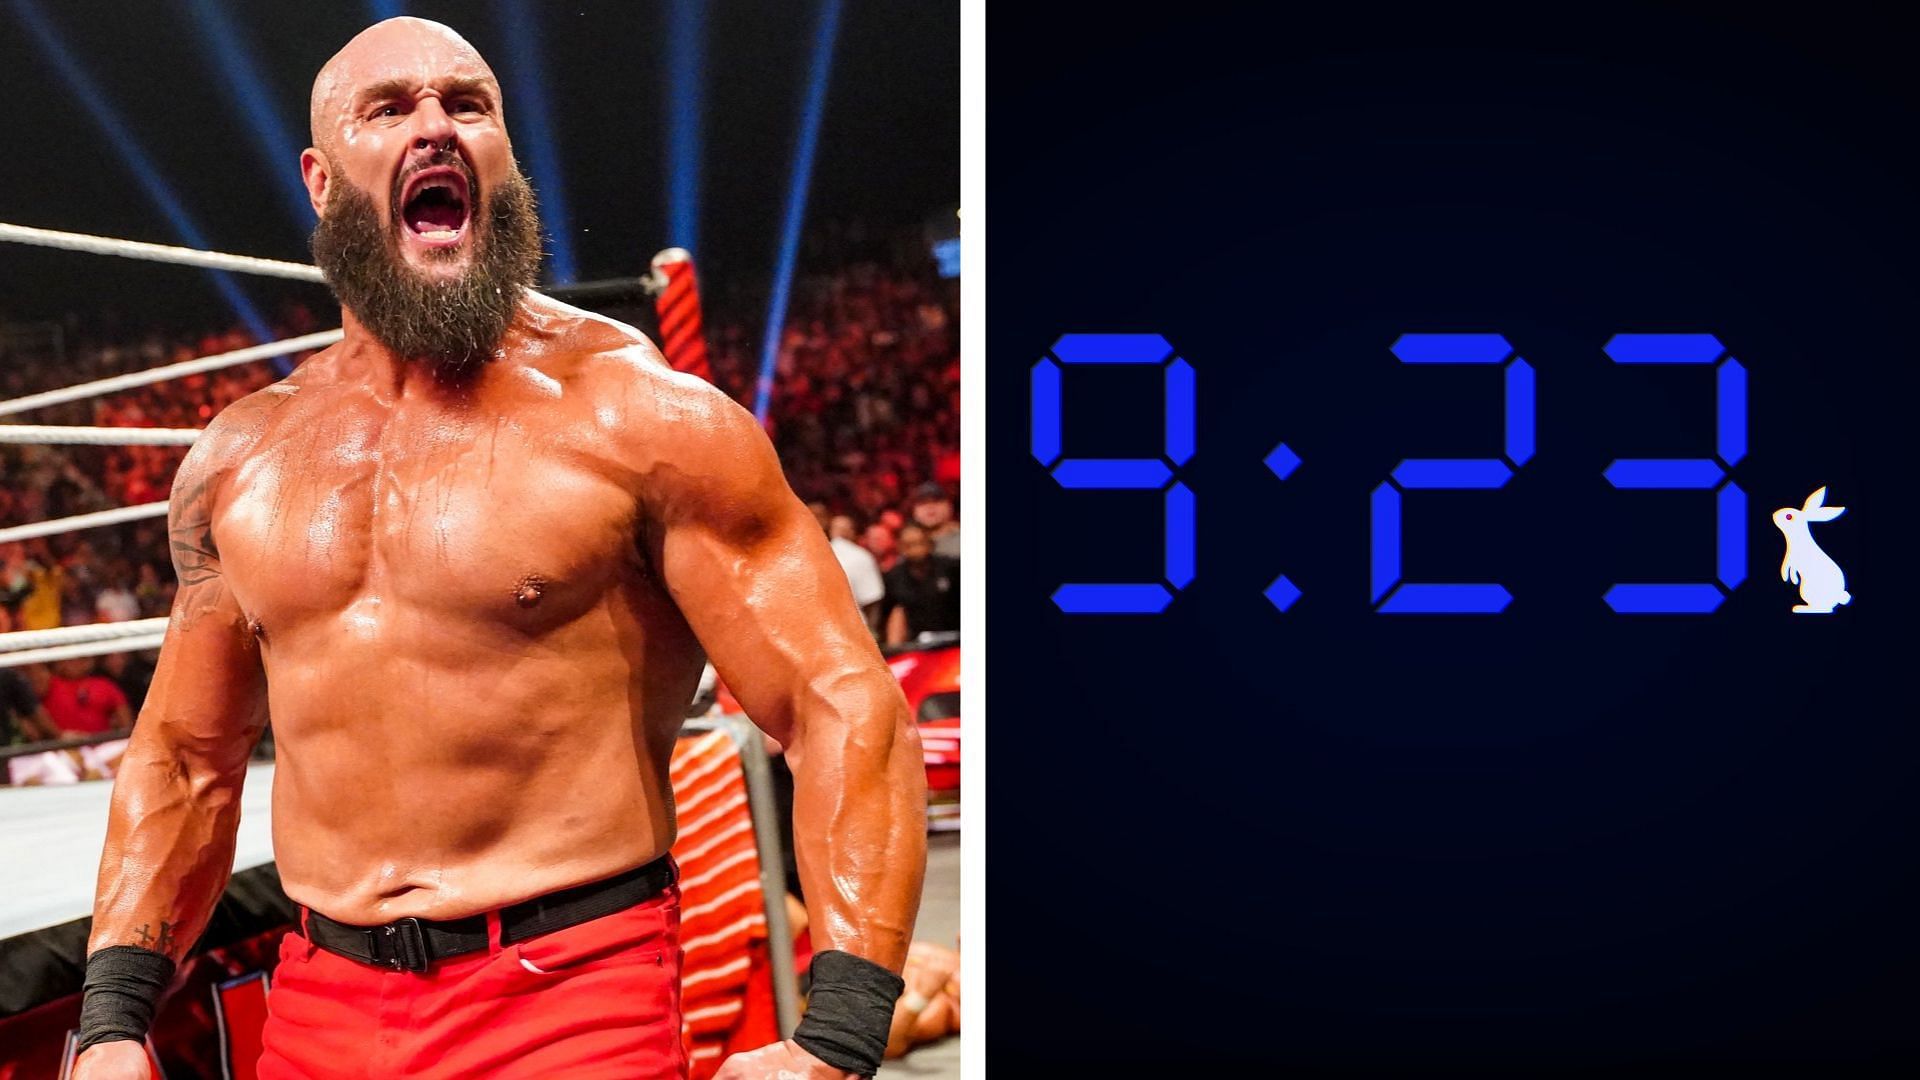 Braun Strowman will take on Otis on WWE SmackDown